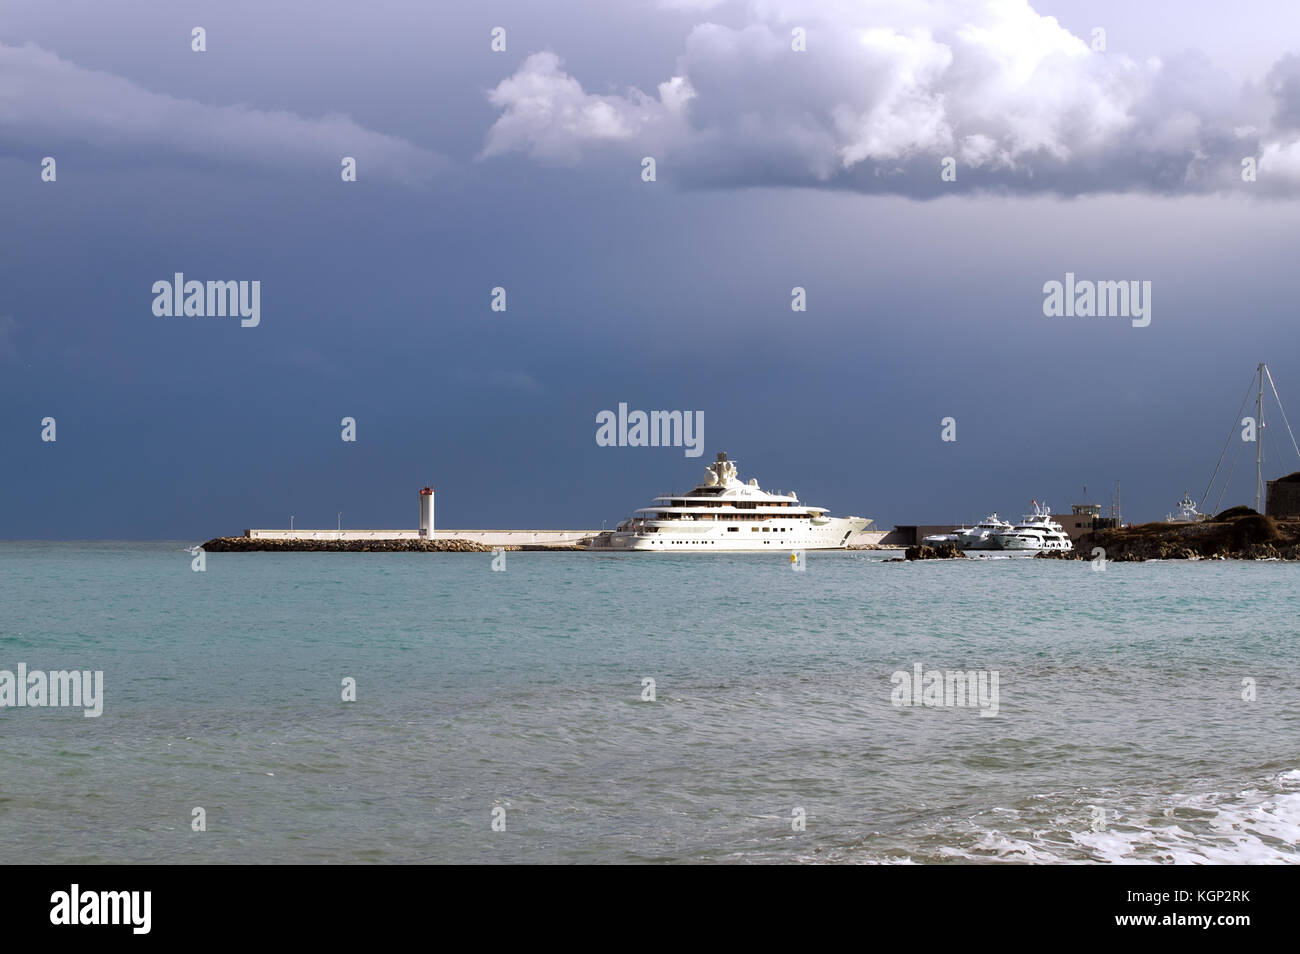 Luxury yachts ancorati nel porto di Antibes in costa azzurra, sotto un cielo tempestoso. Foto Stock